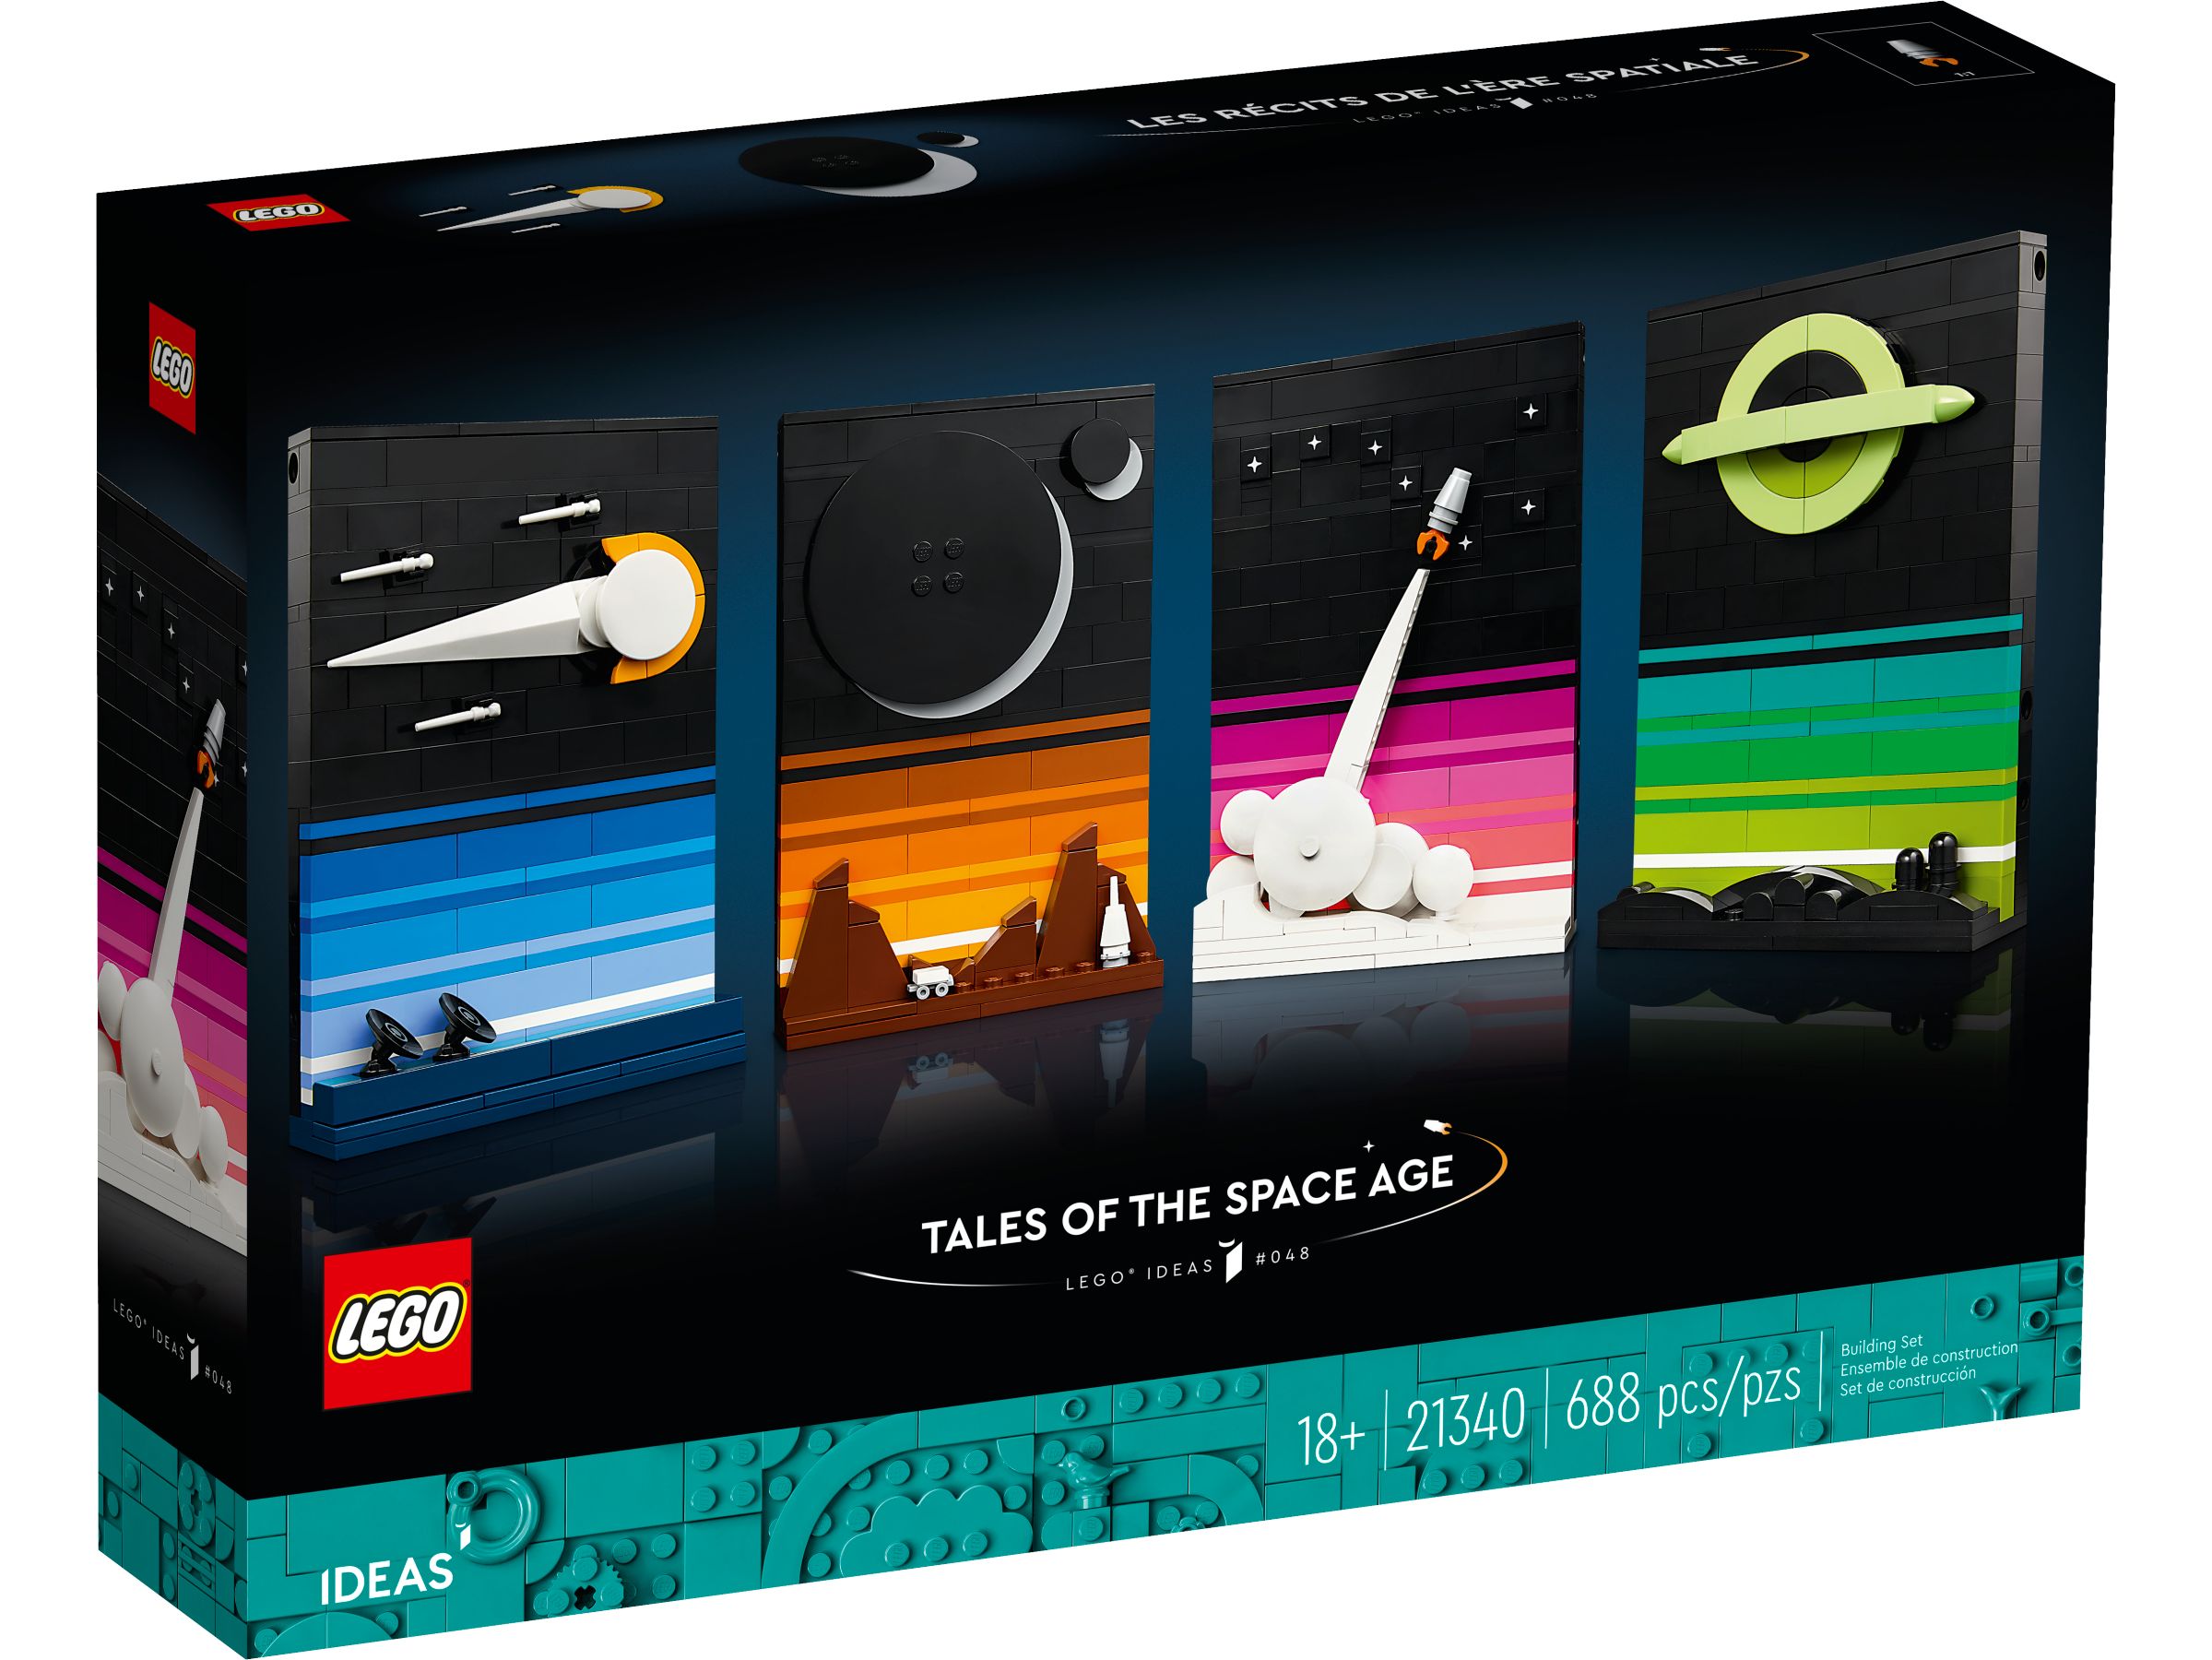 LEGO Ideas 21340 Geschichten aus dem Weltraumzeitalter LEGO_21340_Box1_v39.jpg